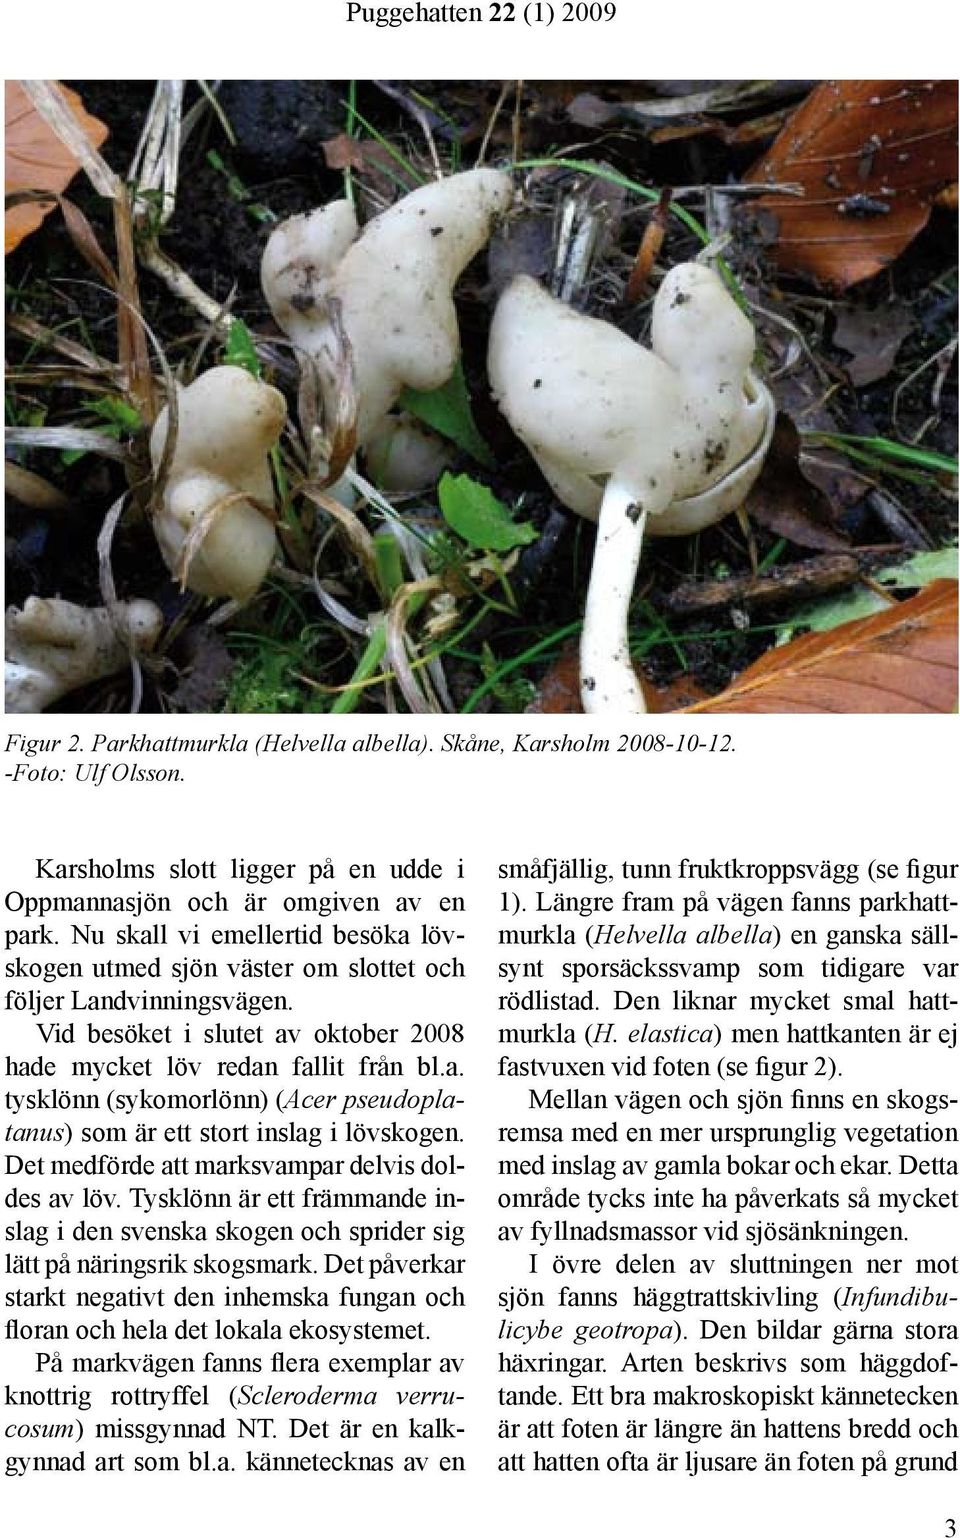 Det medförde att marksvampar delvis doldes av löv. Tysklönn är ett främmande inslag i den svenska skogen och sprider sig lätt på näringsrik skogsmark.